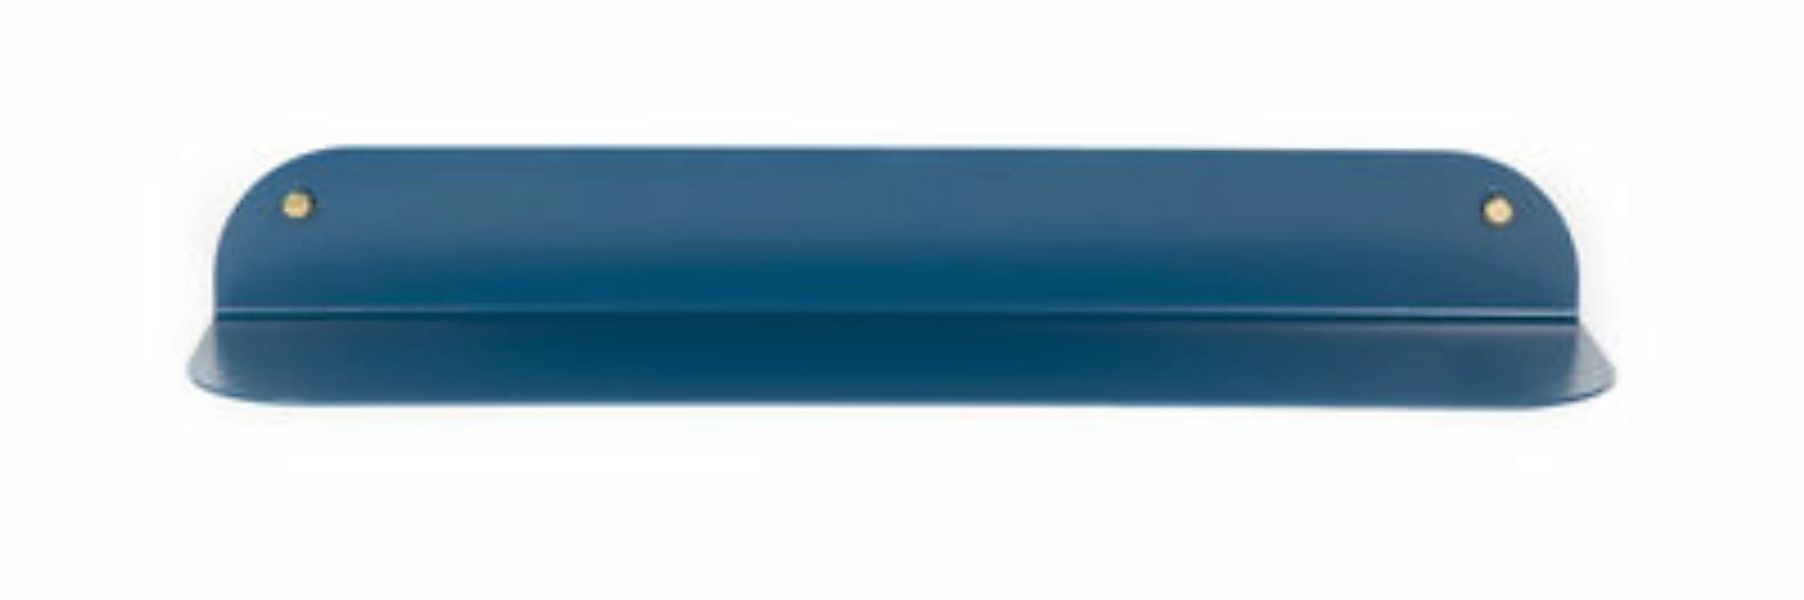 Regal Tokyo Large metall blau / L 80 cm - Stahl - Maison Sarah Lavoine - Bl günstig online kaufen